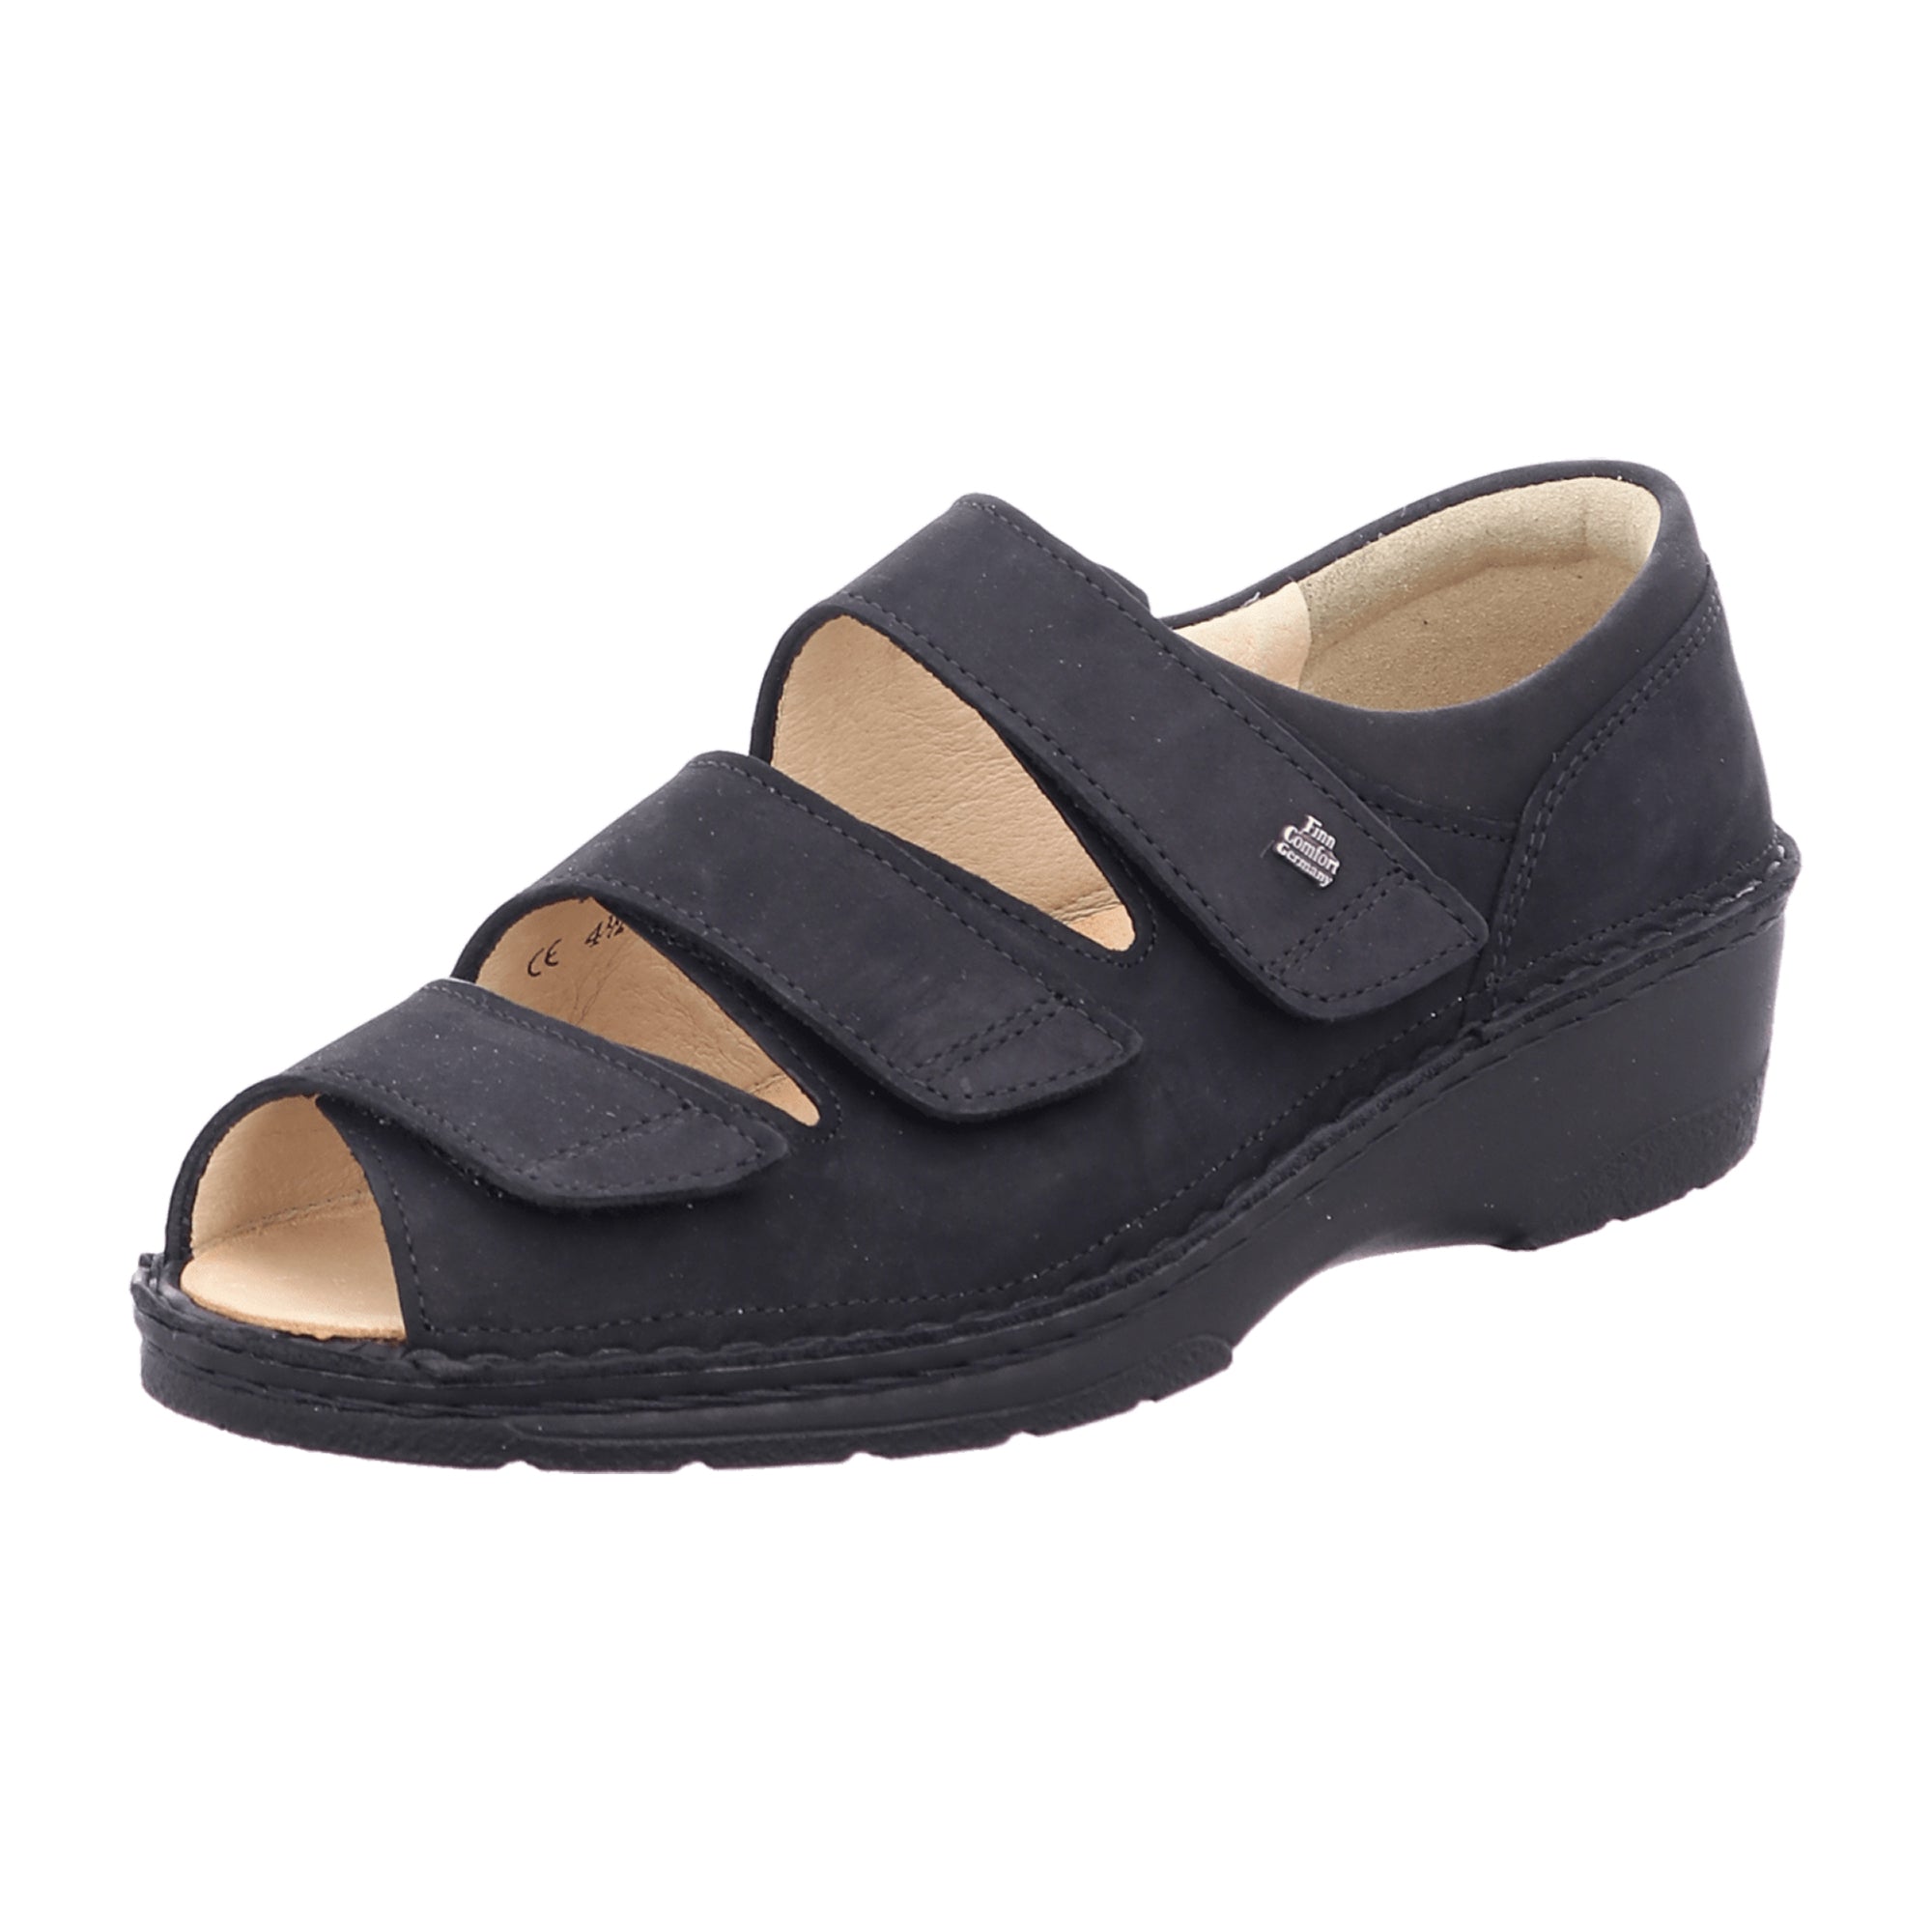 Finn Comfort Ischia Women's Comfort Sandals in Elegant Black